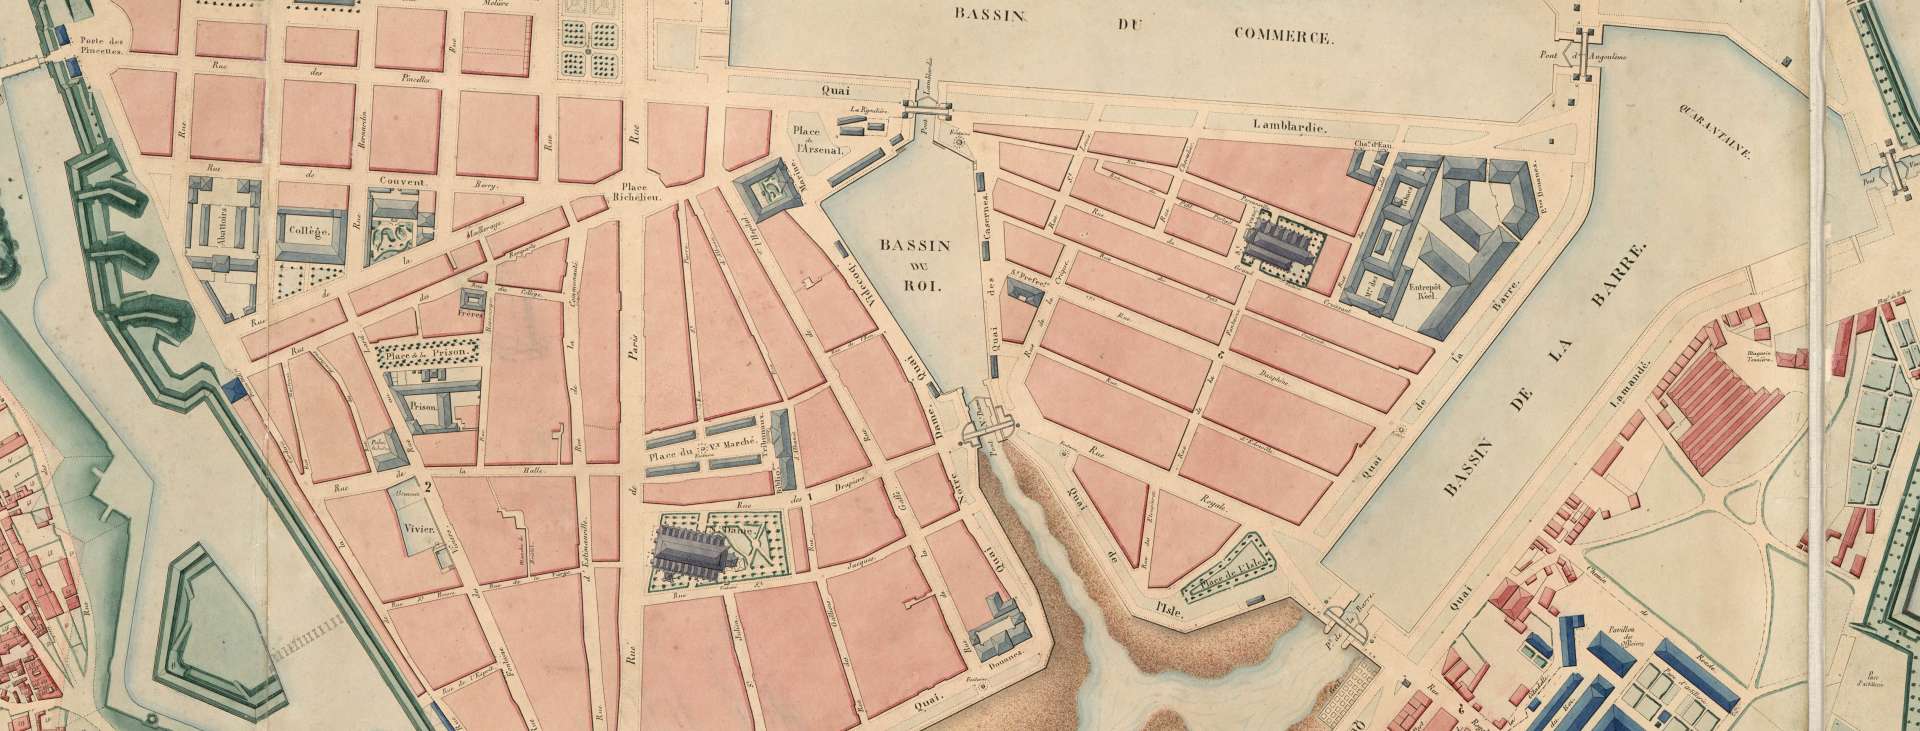 Le Havre et ses environs (1843)